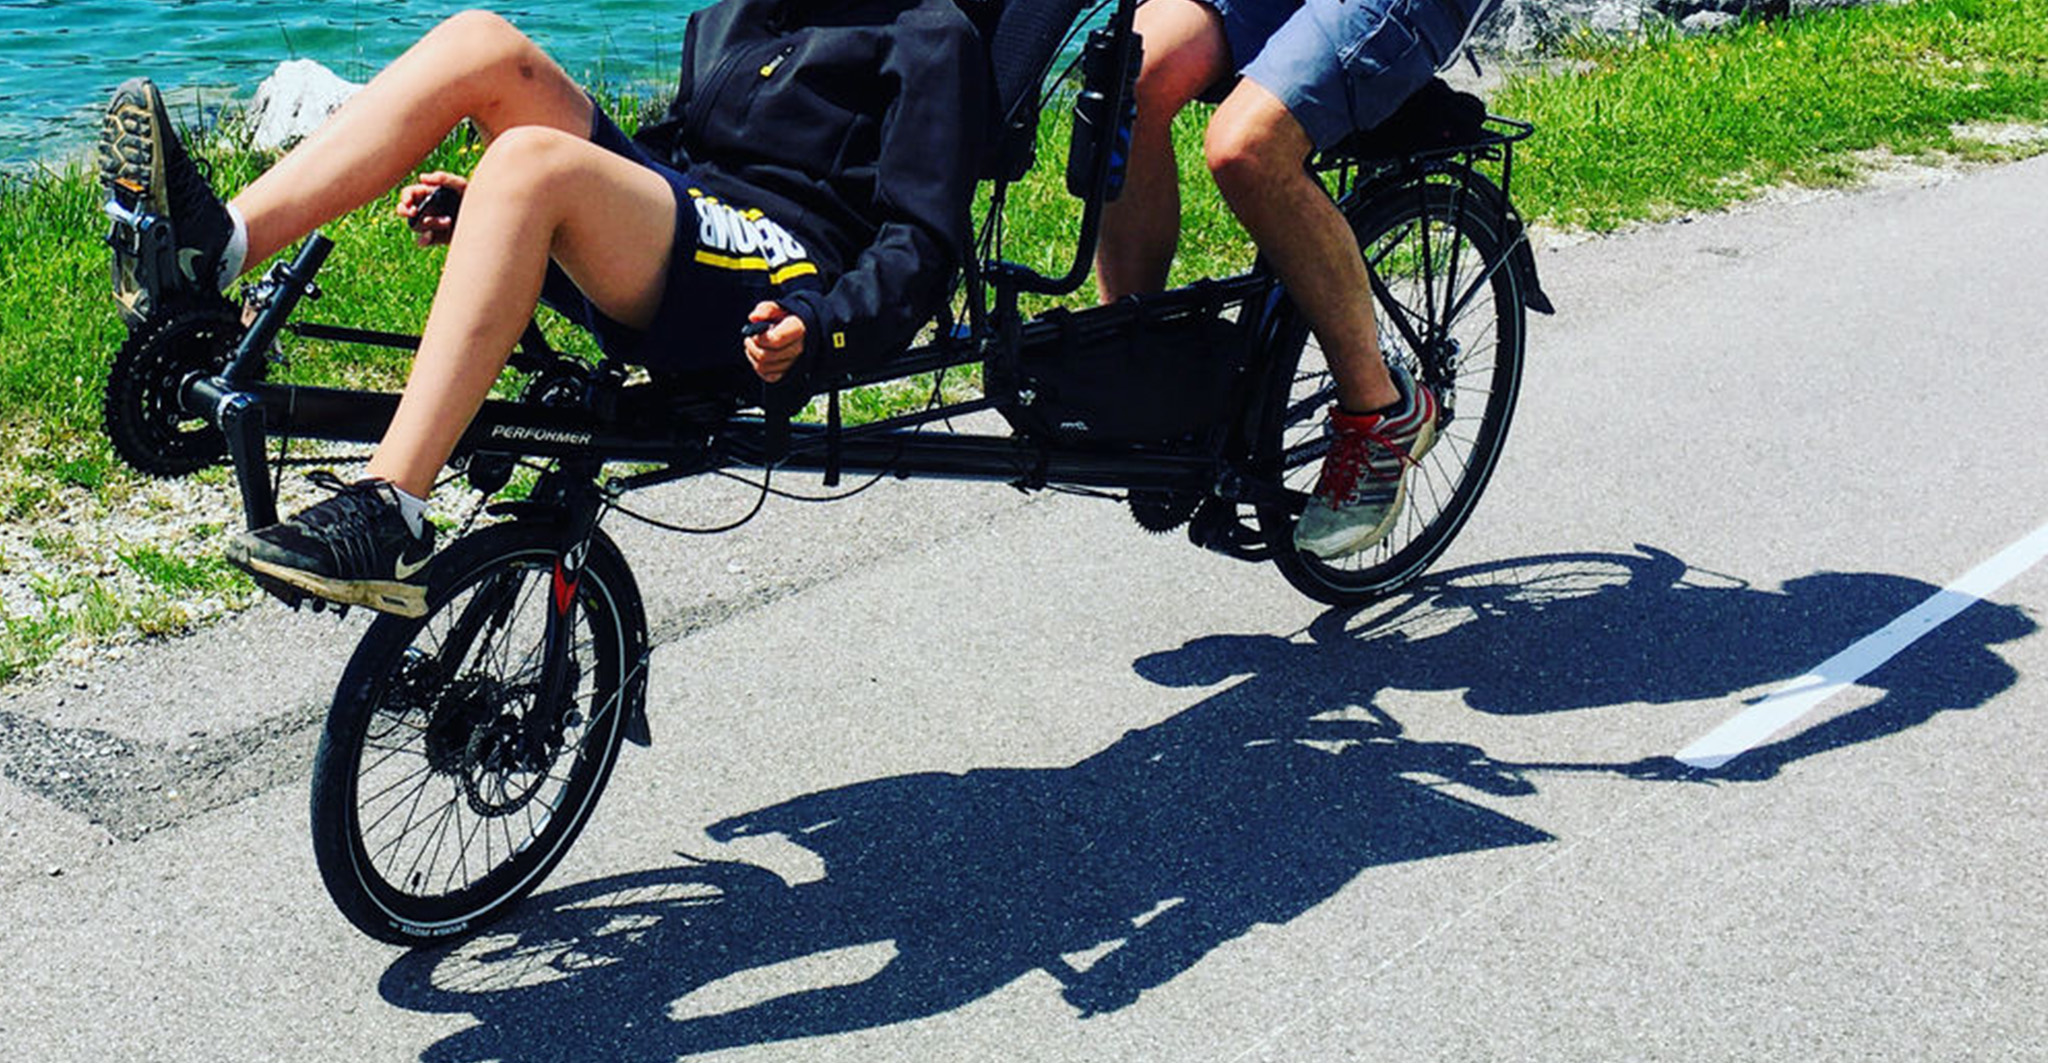 vélo tandem semi couché pour voyager avec les vélos de la famille